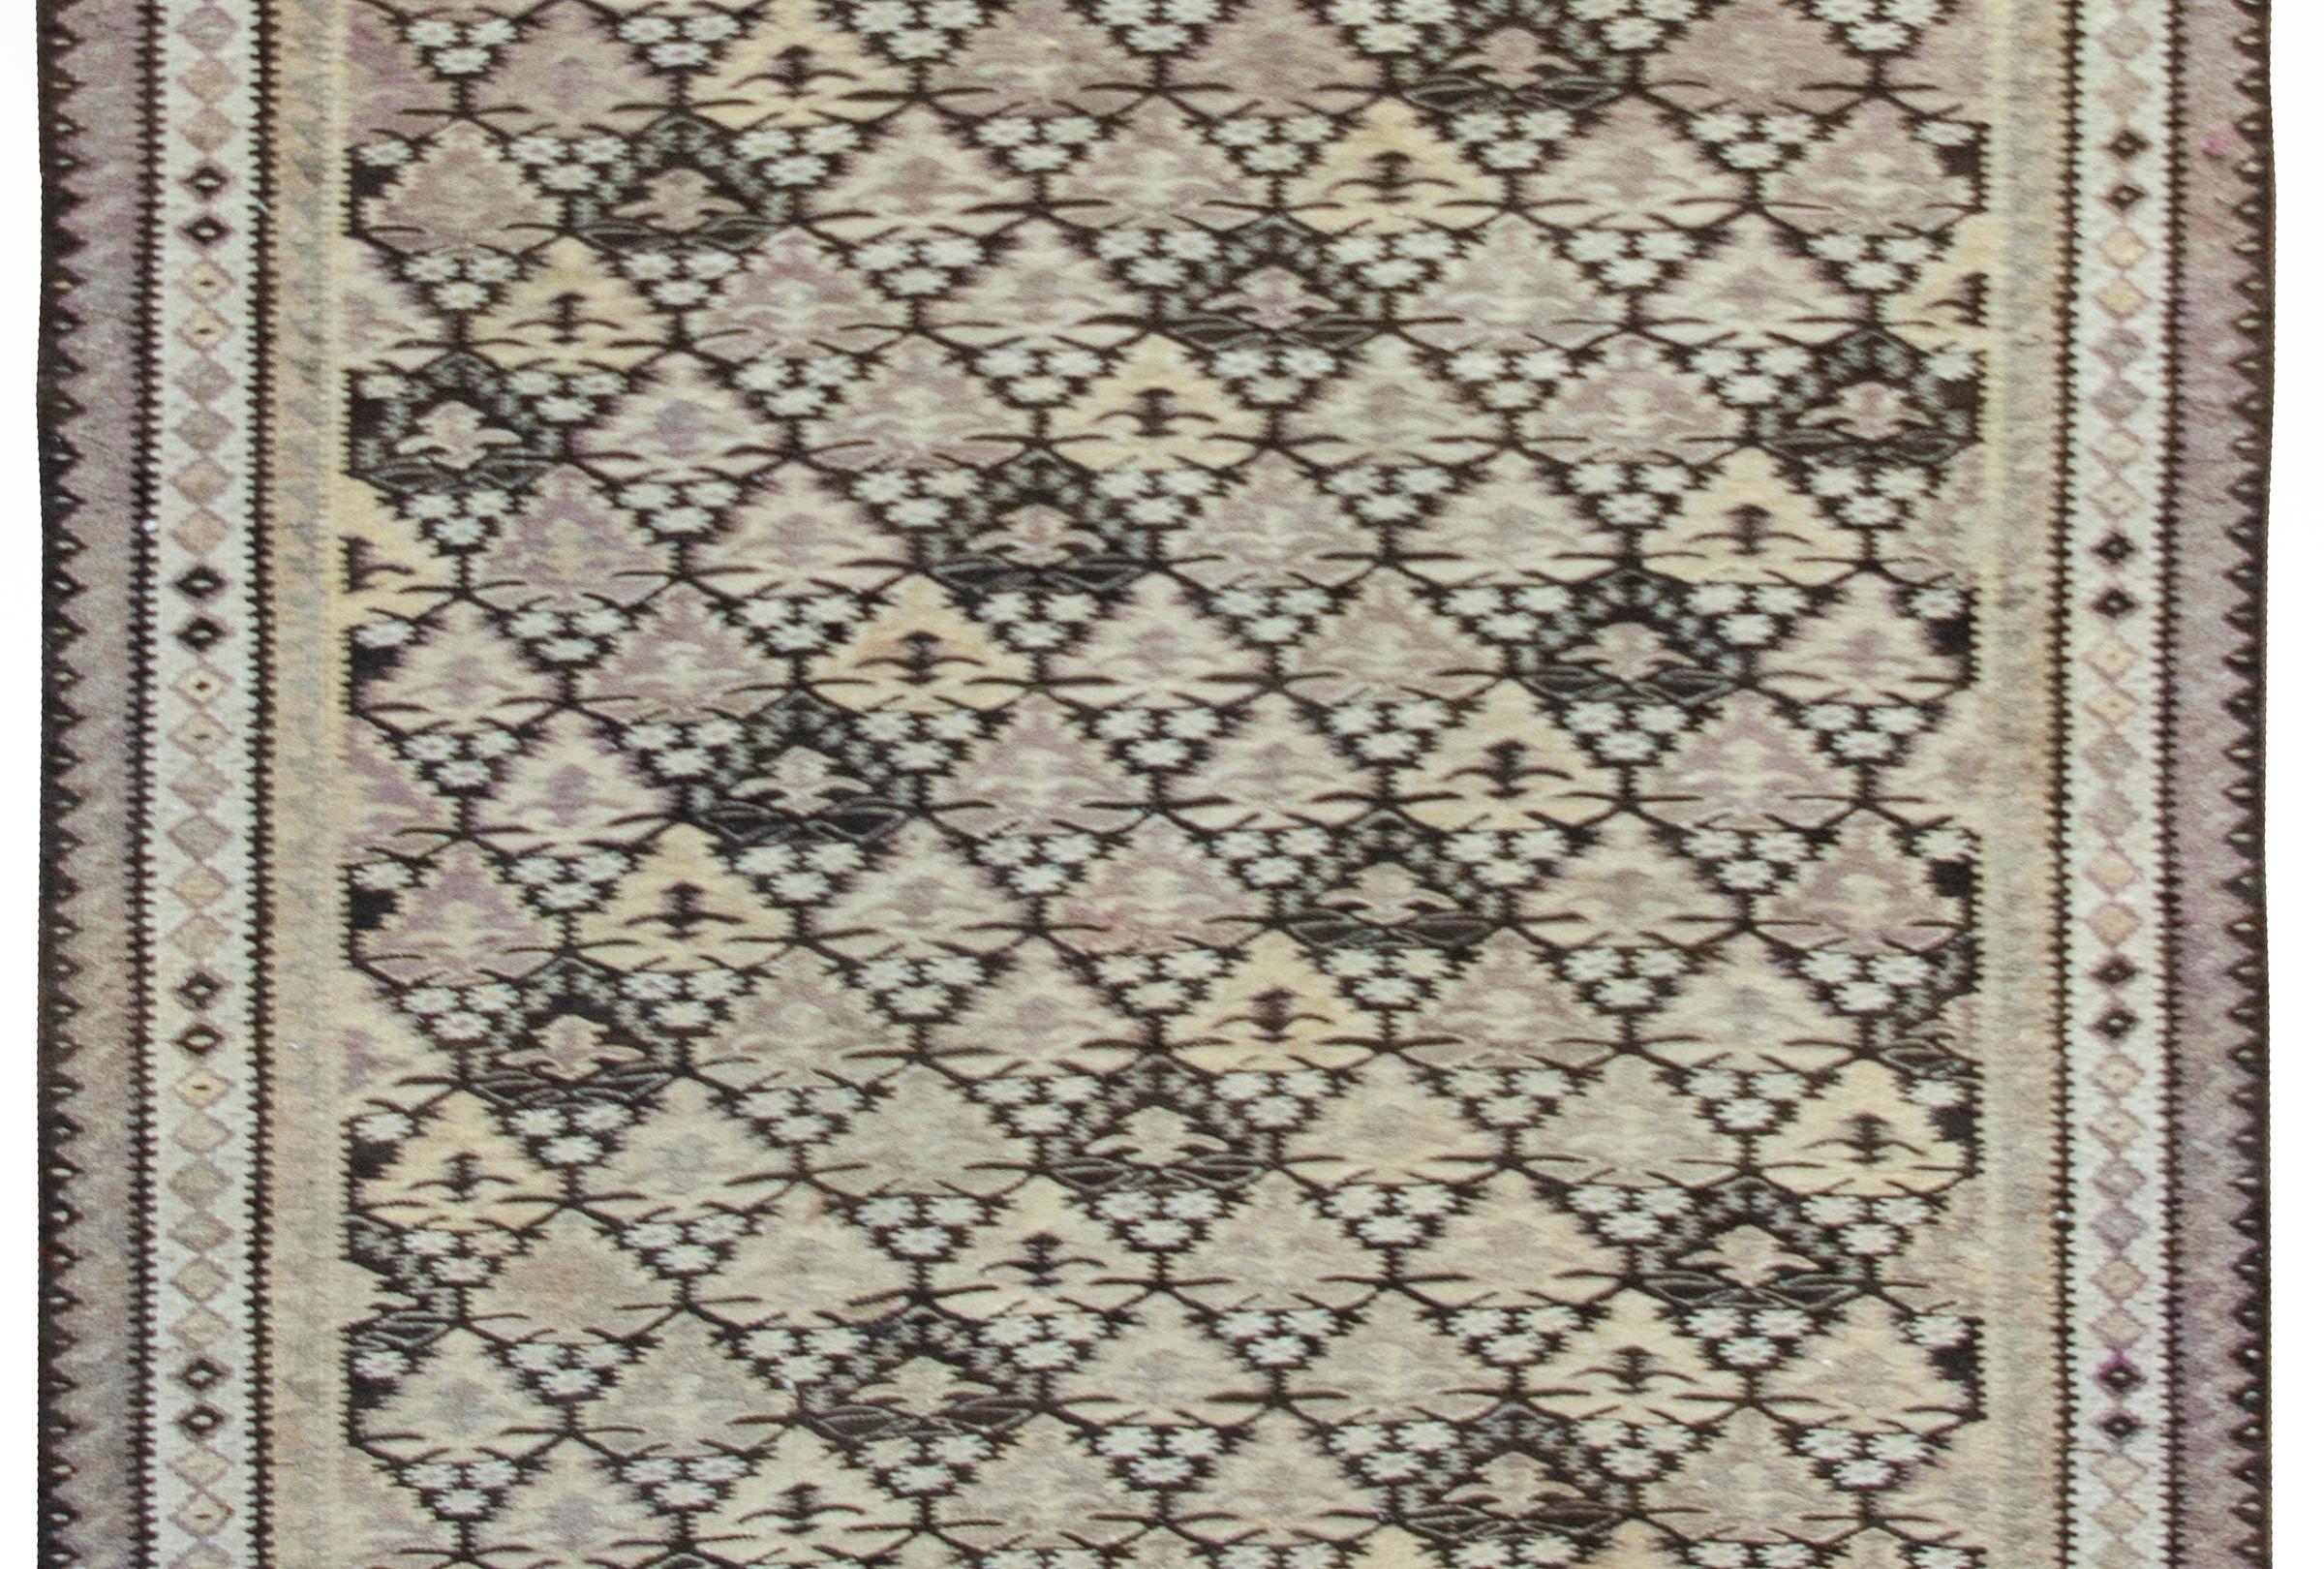 Ein schöner persischer Qazvin-Kilim-Teppich aus dem frühen 20. Jahrhundert mit einem Lebensbaum-Muster, das in abwechselnden farbigen Streifen in verschiedenen Farben, darunter Violett, Gold, Weiß und Schwarz, gewebt und von geometrisch gemusterten